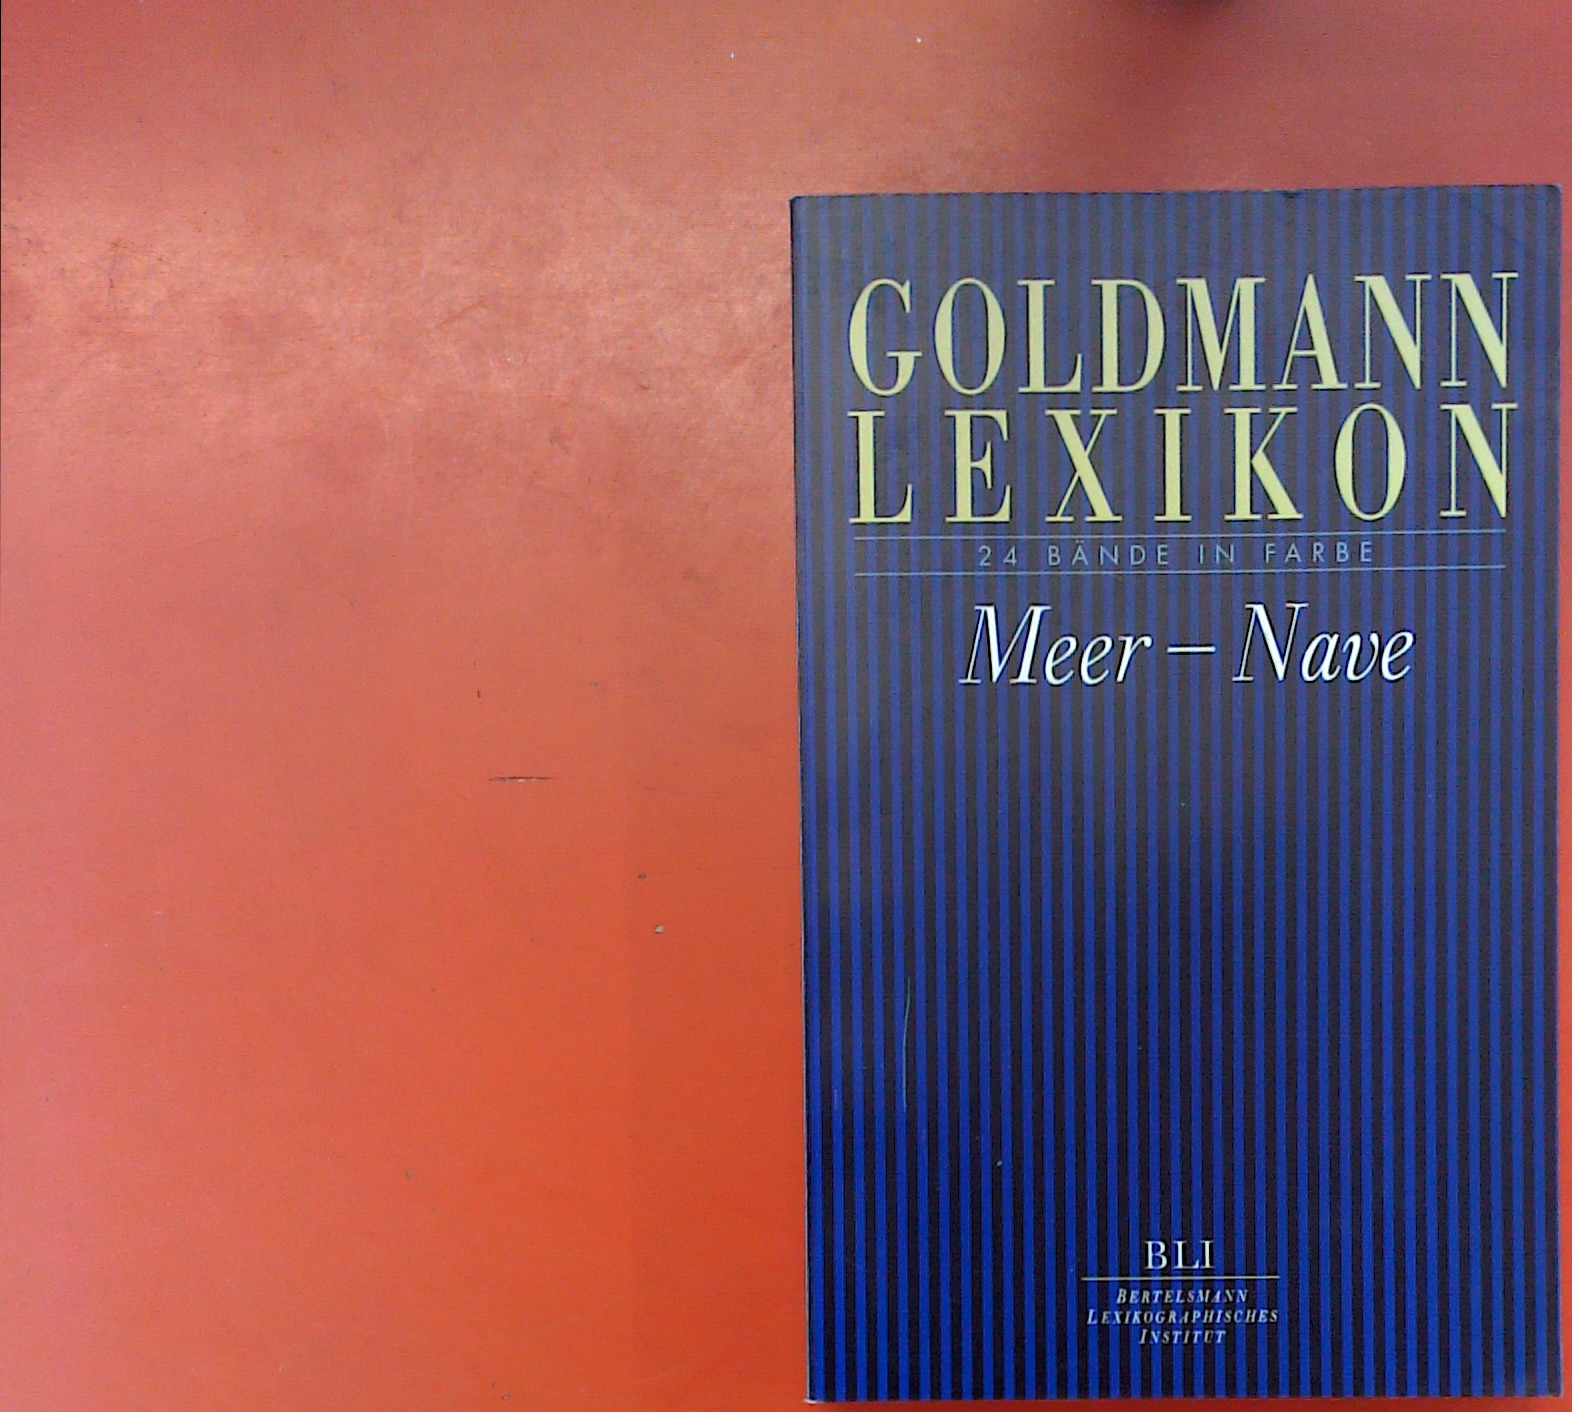 Goldmann-Lexikon. 24 Bände in Farbe. BAND 15: Meer - Nave - Hrsg. Bertelsmann Lexikographisches Institut